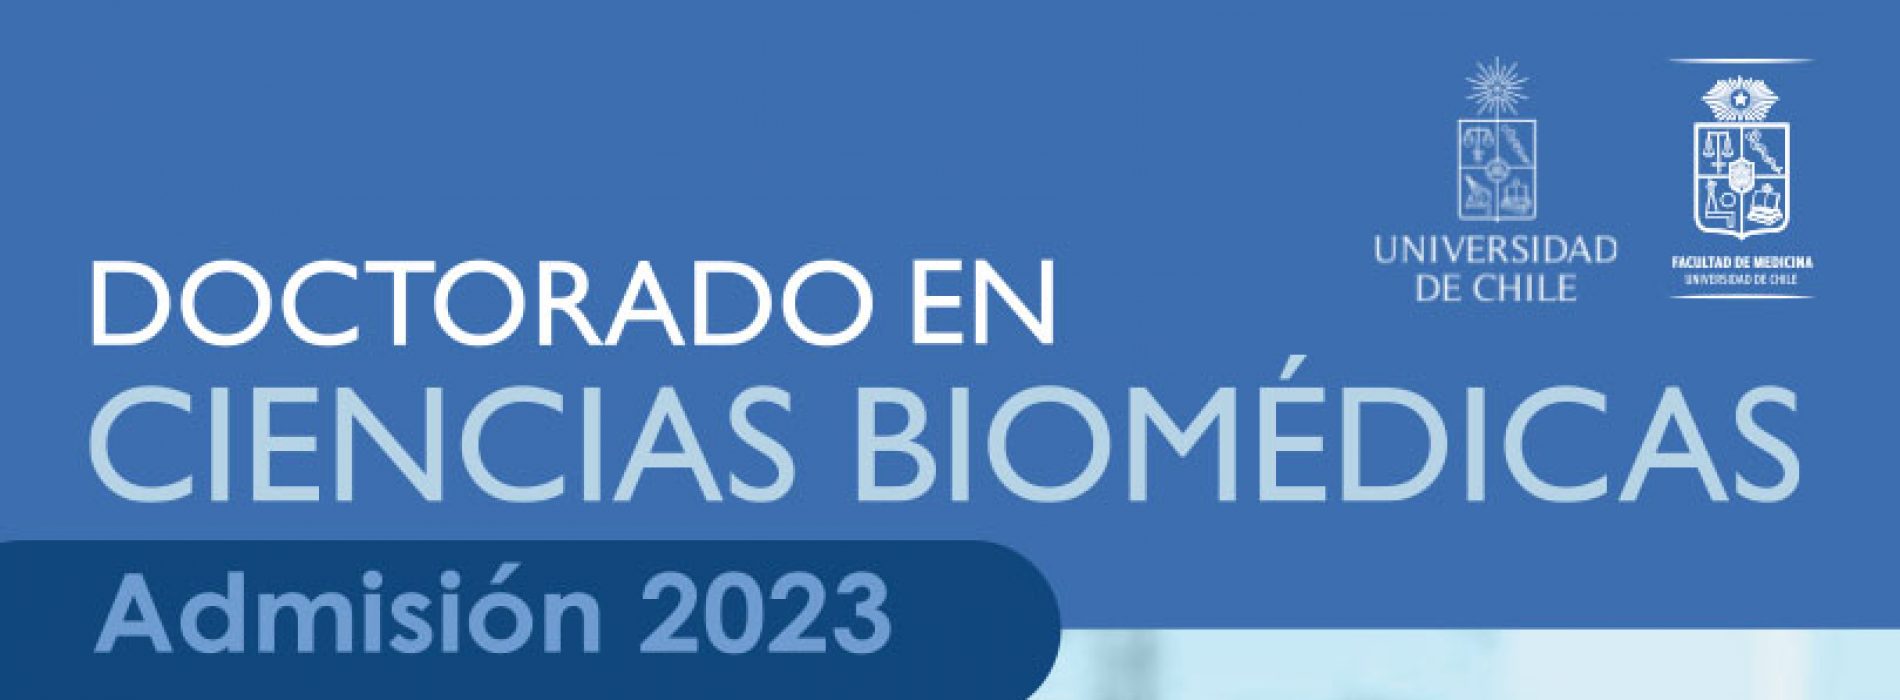 DOCTORADO EN CIENCIAS BIOMÉDICAS, admisión 2023